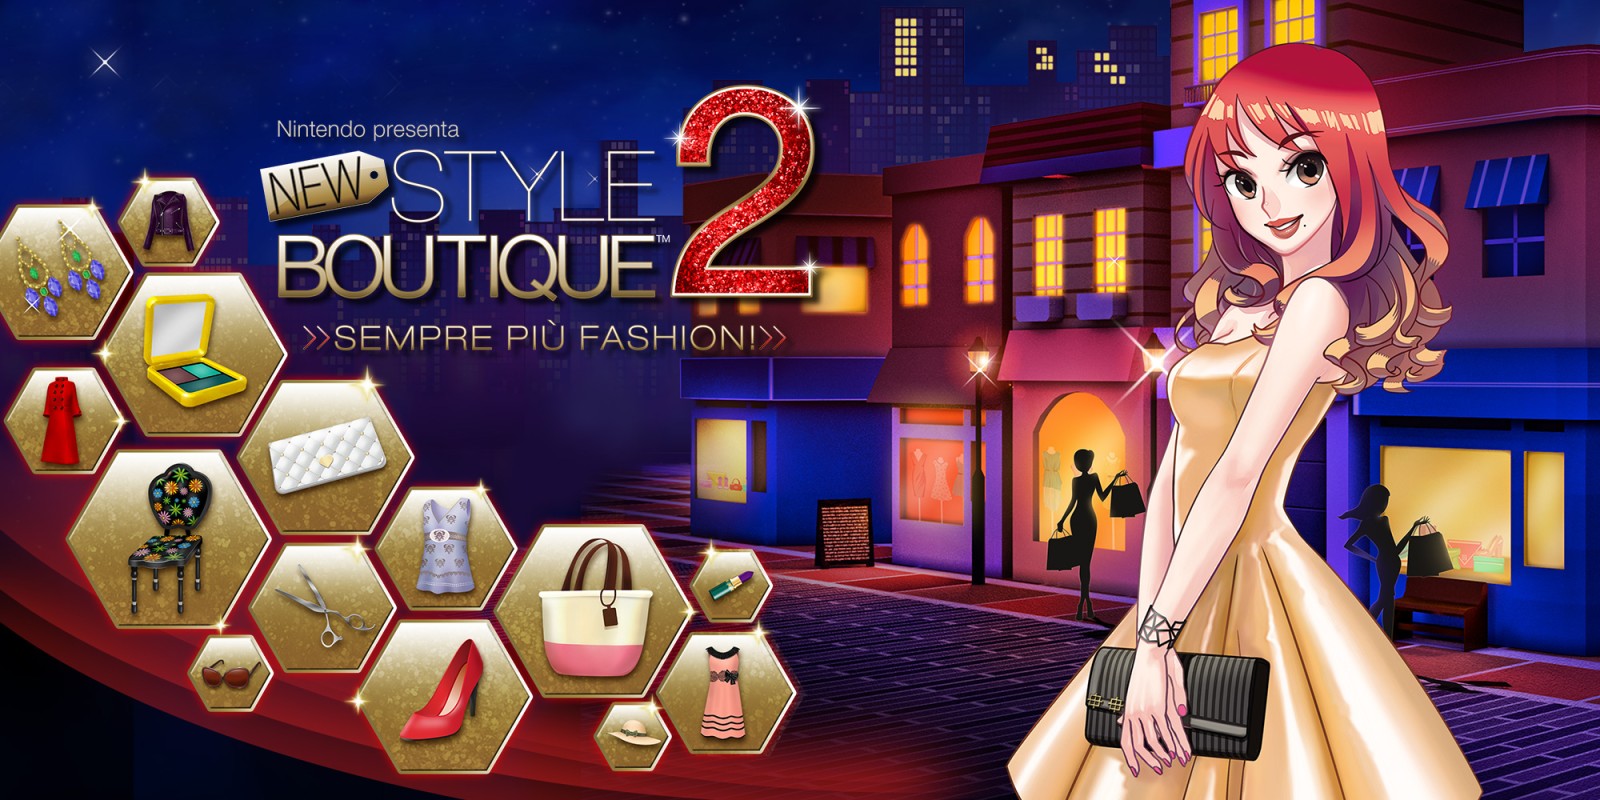 Nintendo presenta: New Style Boutique 2 - Sempre più fashion!